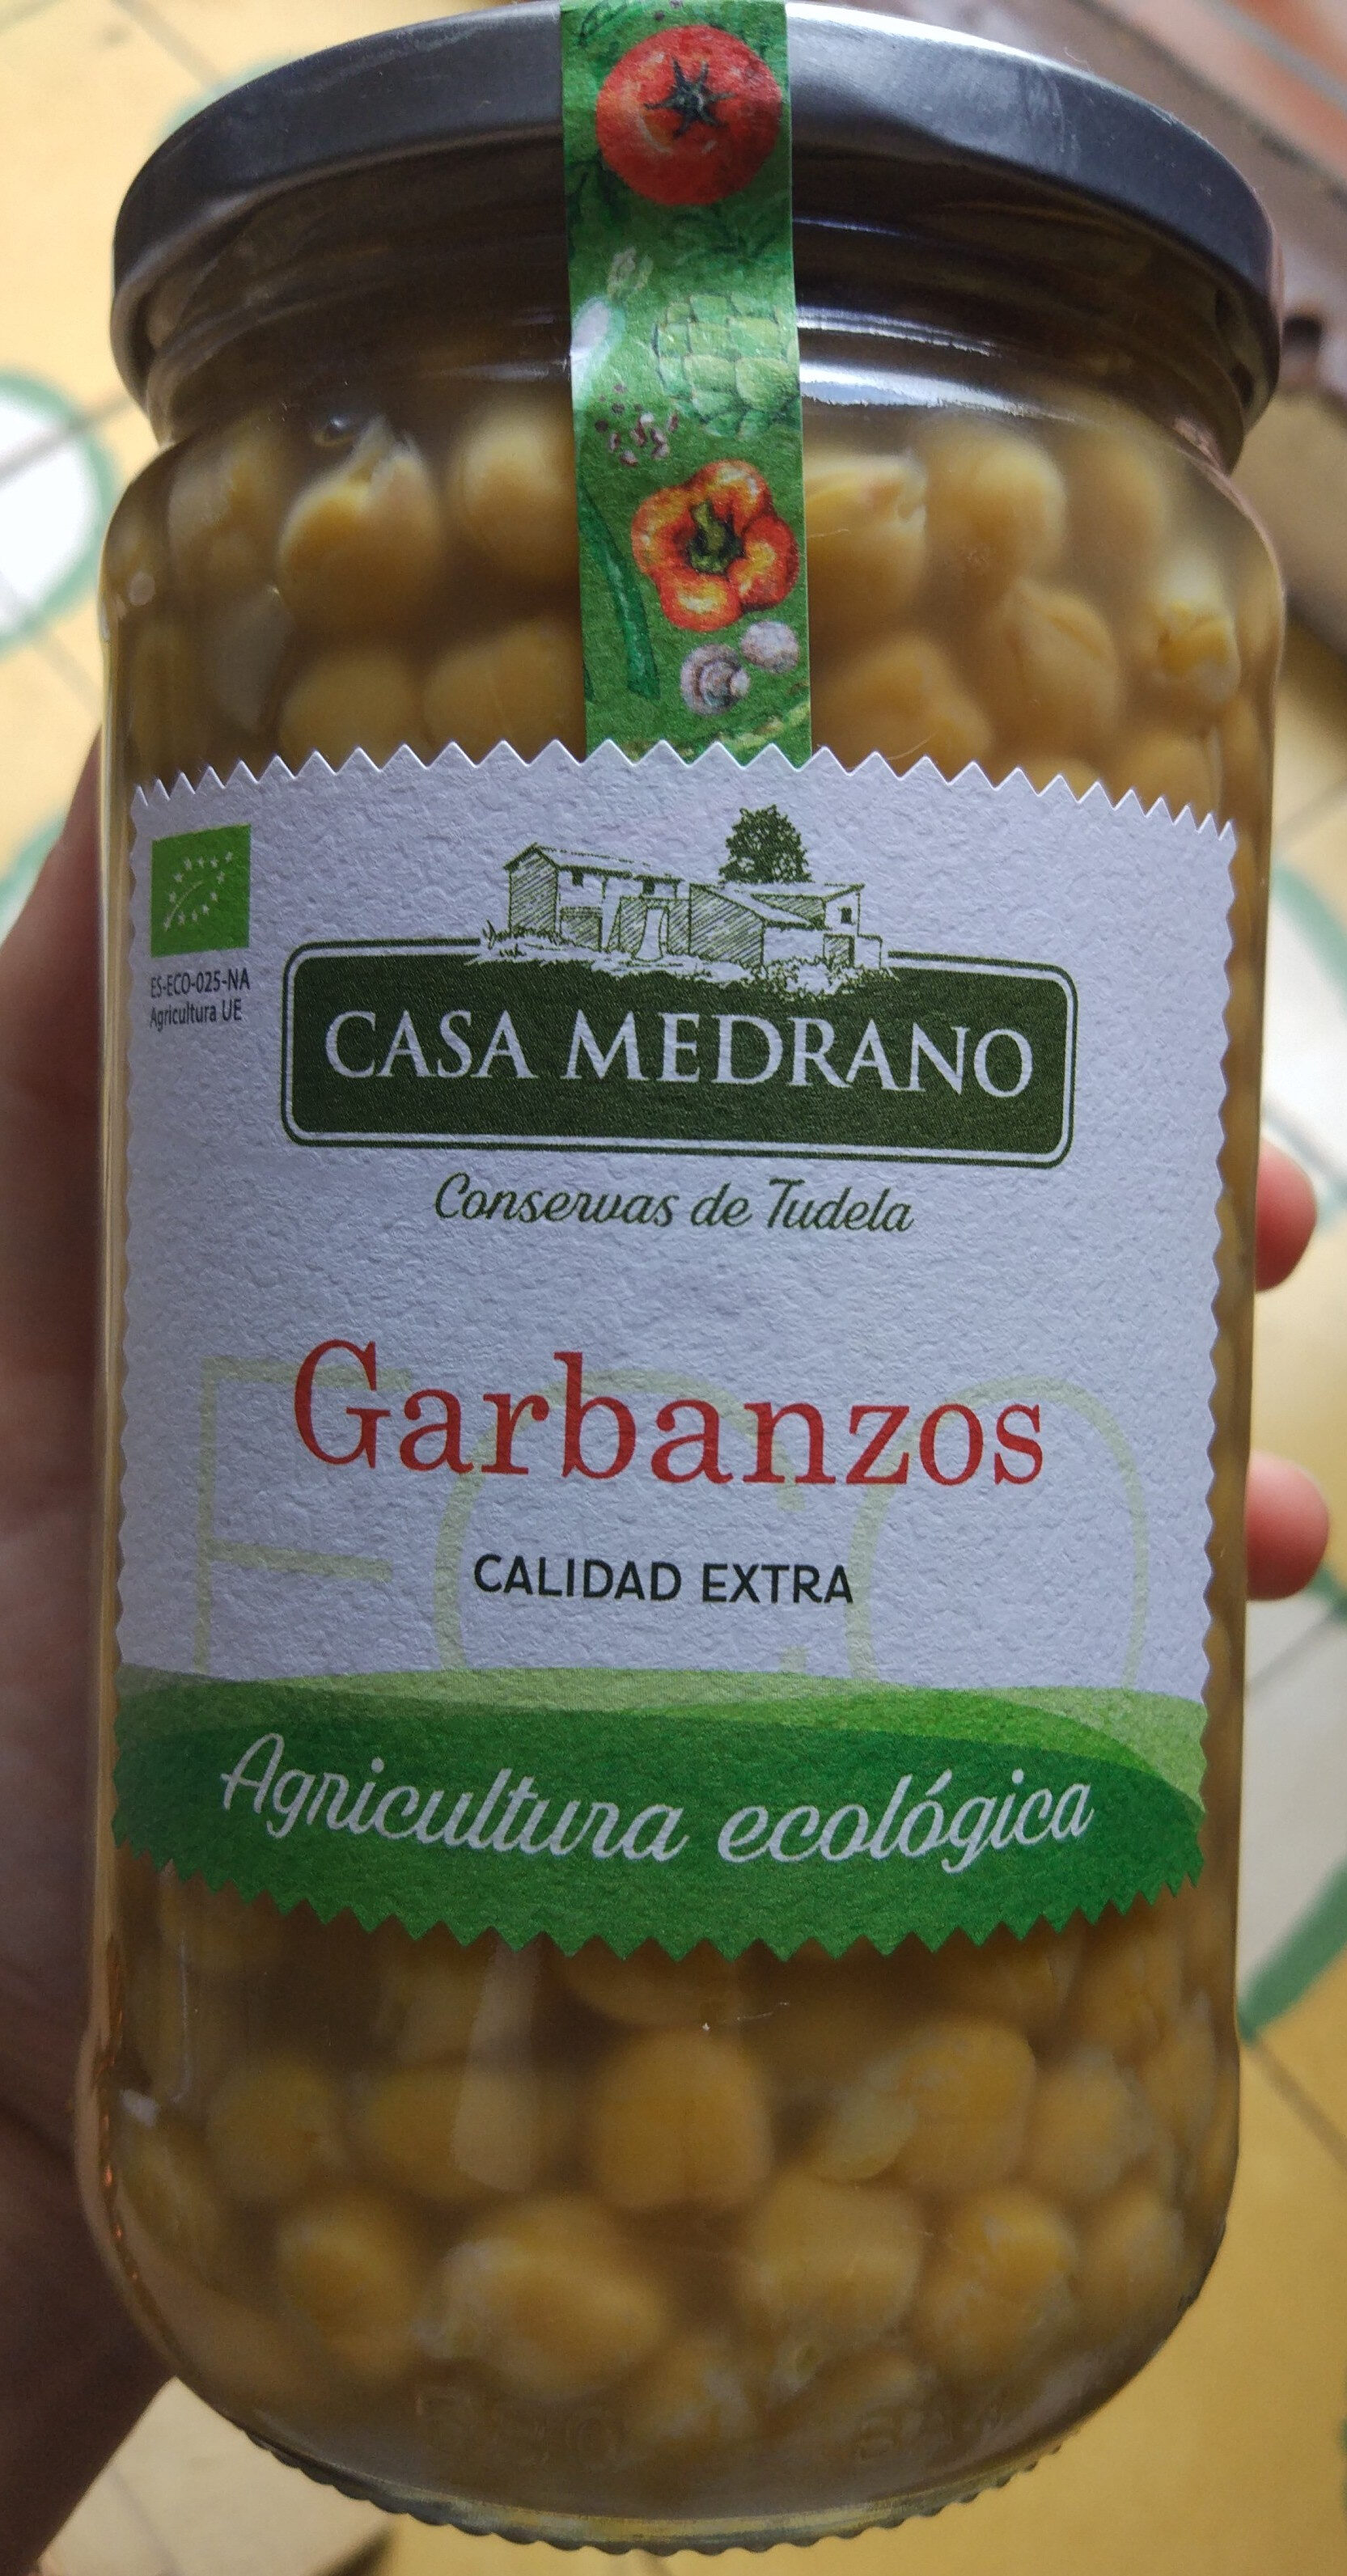 Garbanzos - Product - es